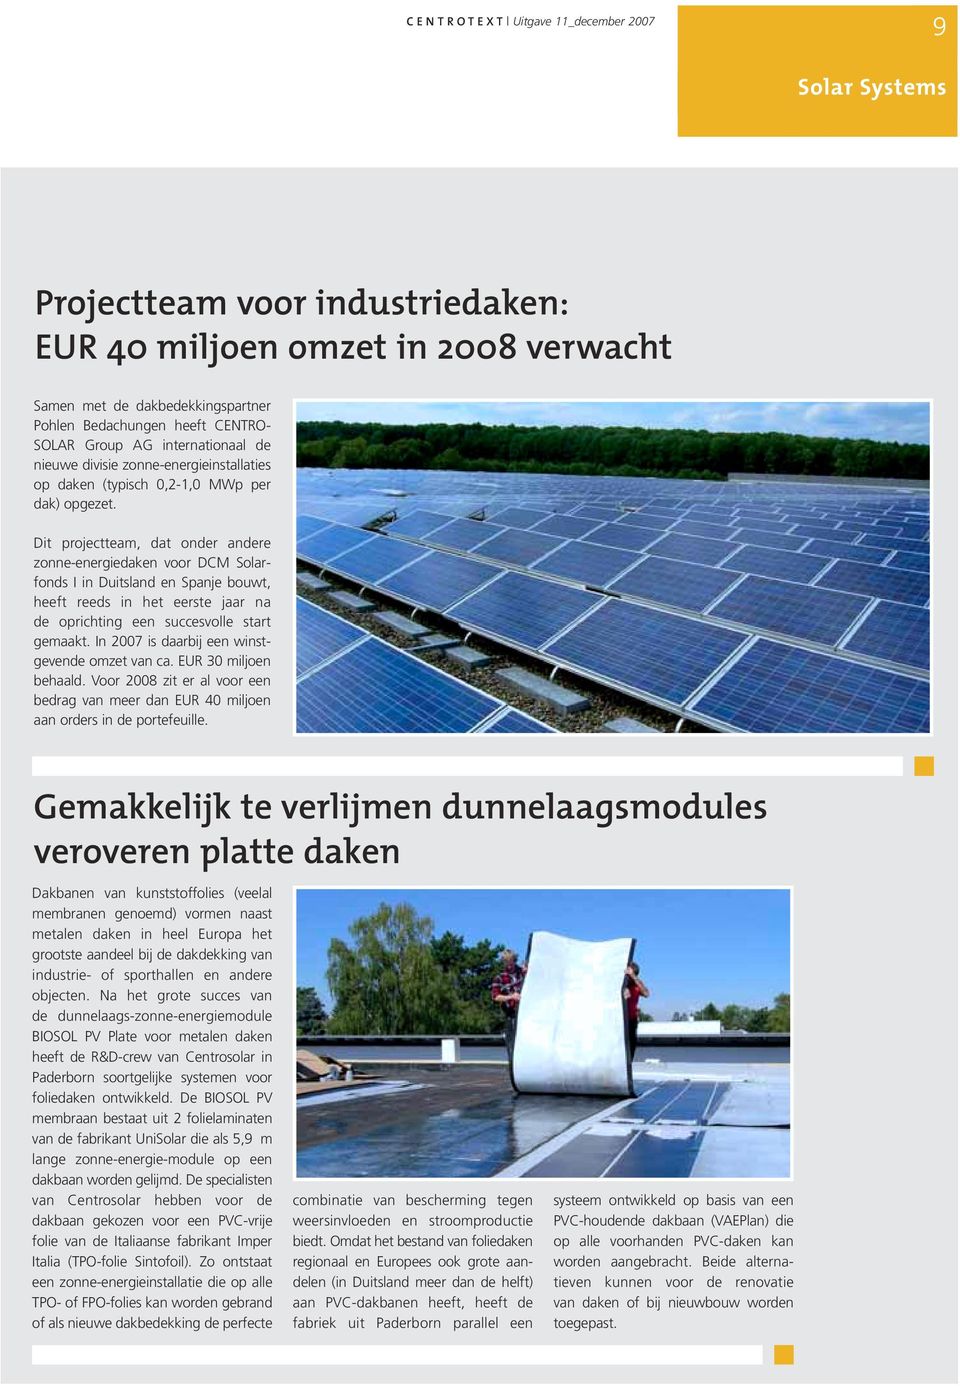 Dit projectteam, dat onder andere zonne-energiedaken voor DCM Solarfonds I in Duitsland en Spanje bouwt, heeft reeds in het eerste jaar na de oprichting een succesvolle start gemaakt.